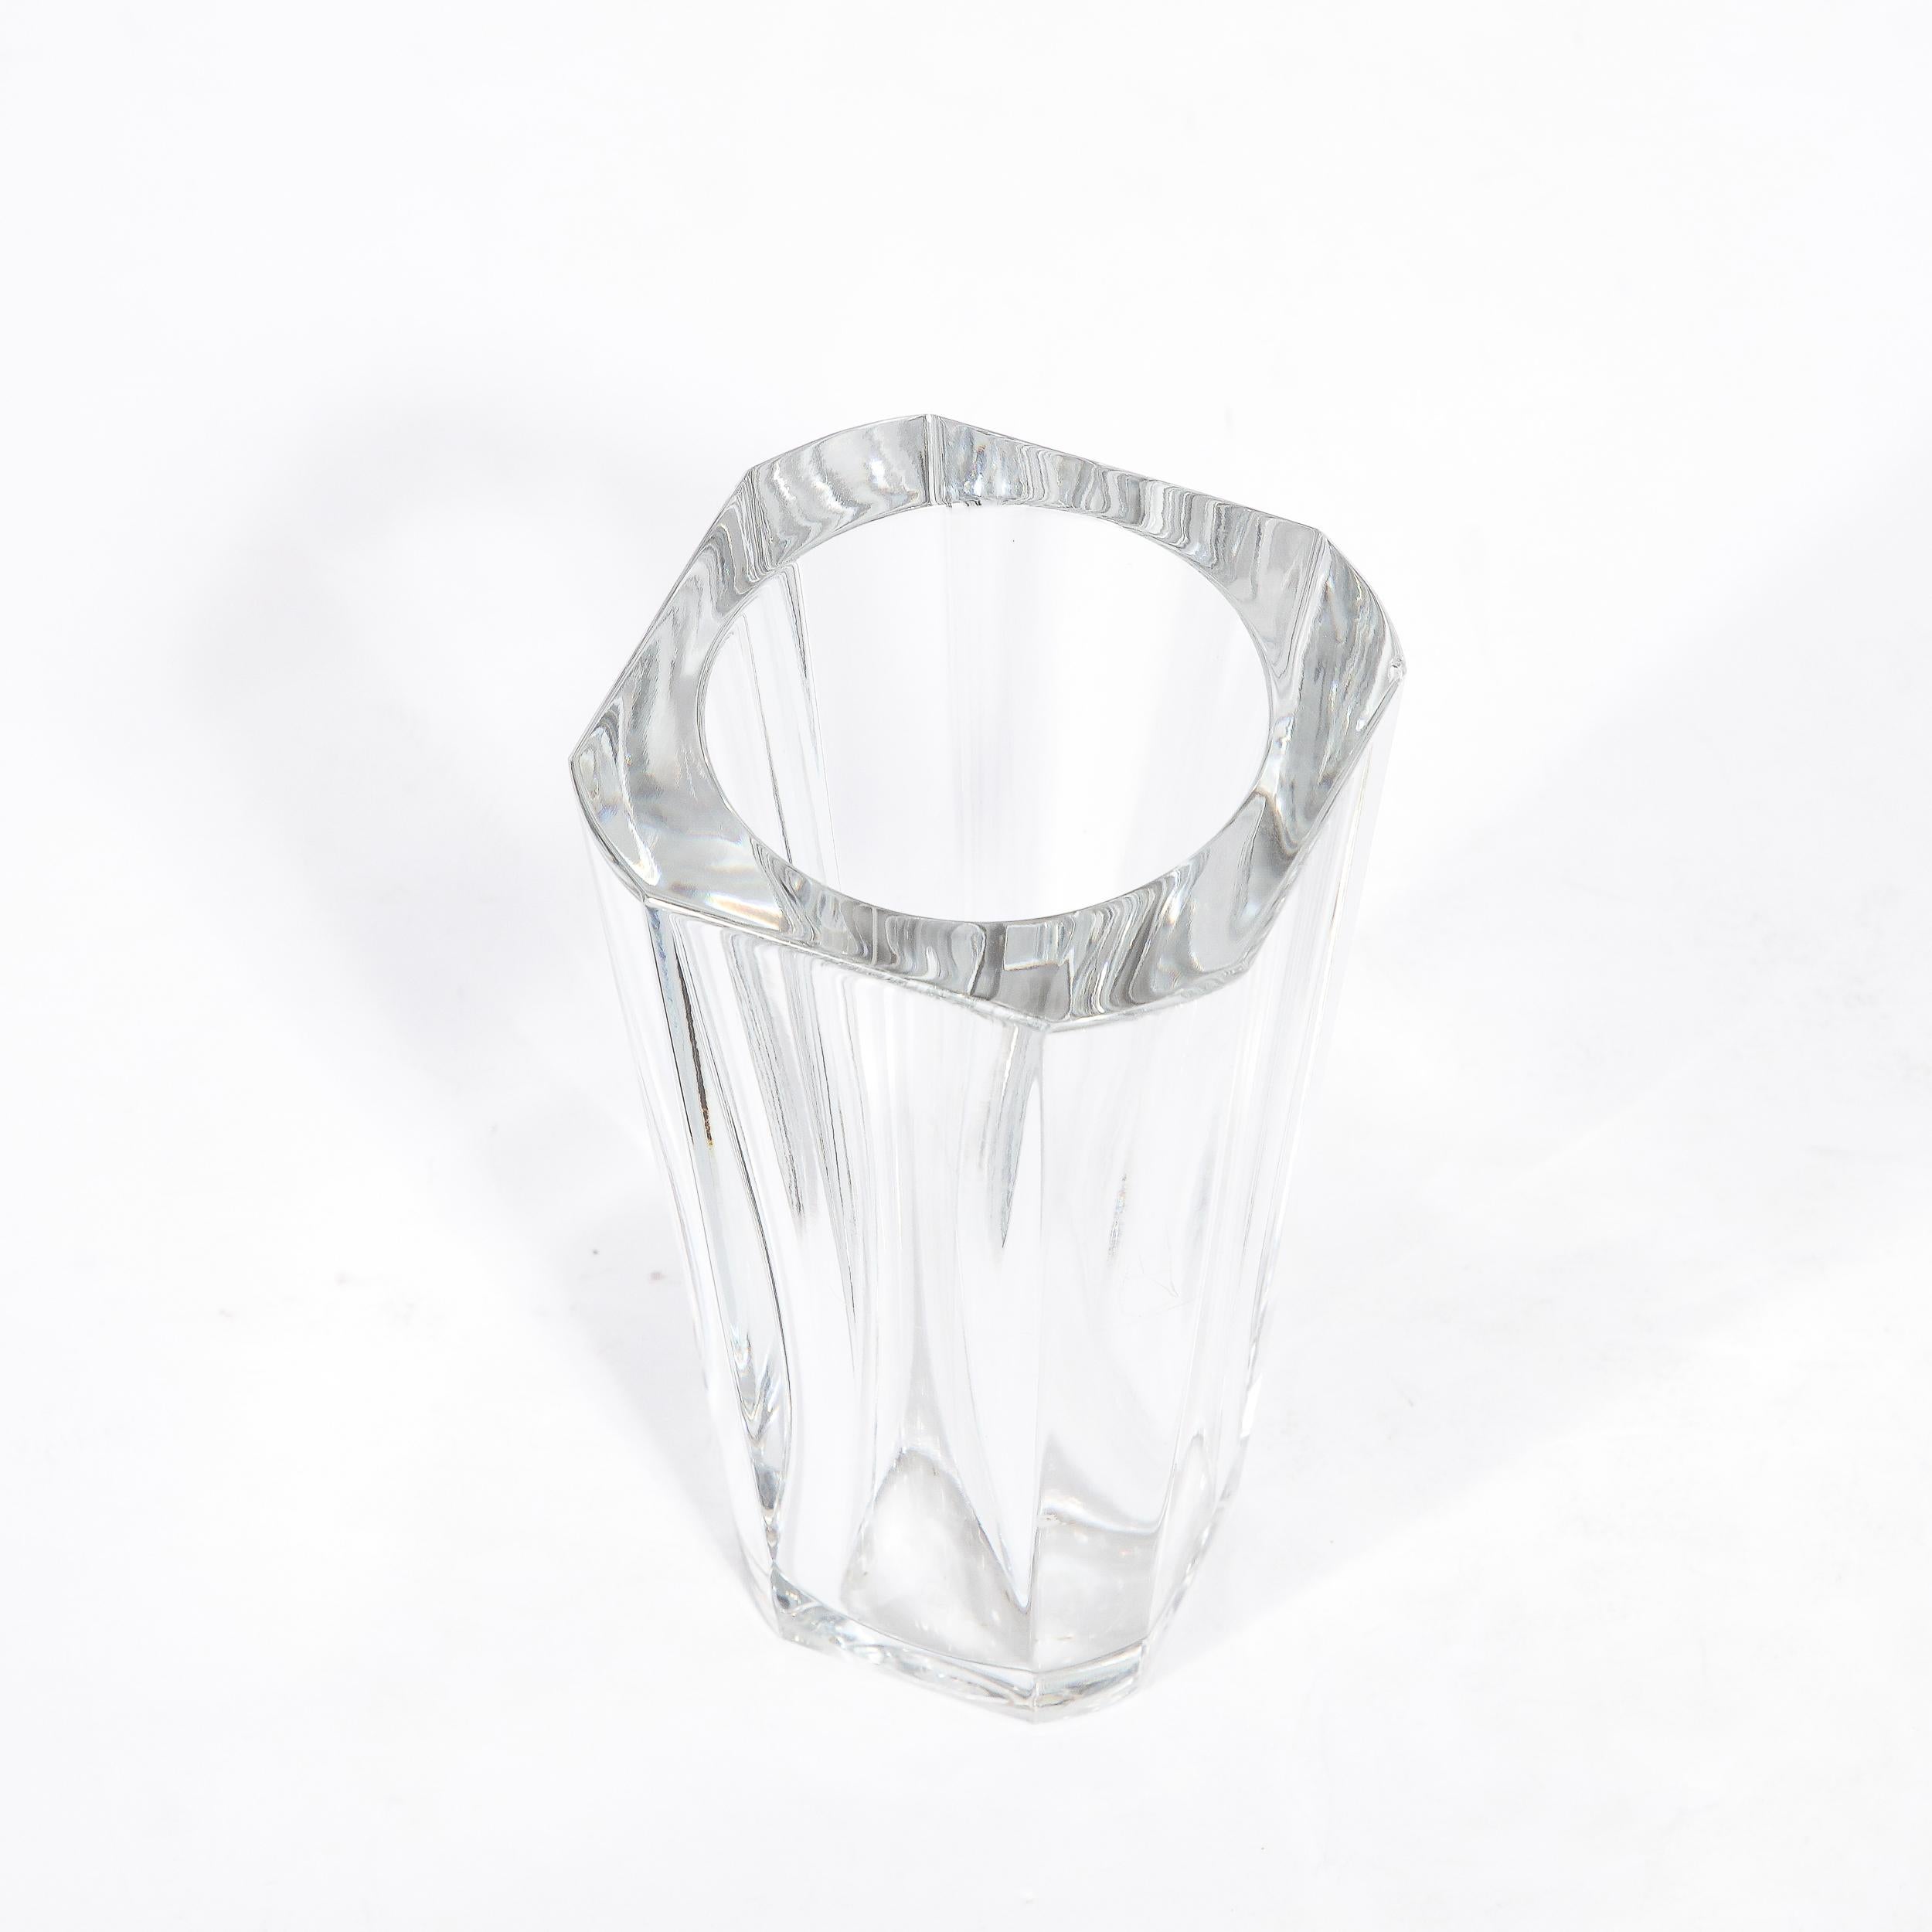 French Modernist Translucent Sculptural Crystal Vase Signed Baccarat  For Sale 4